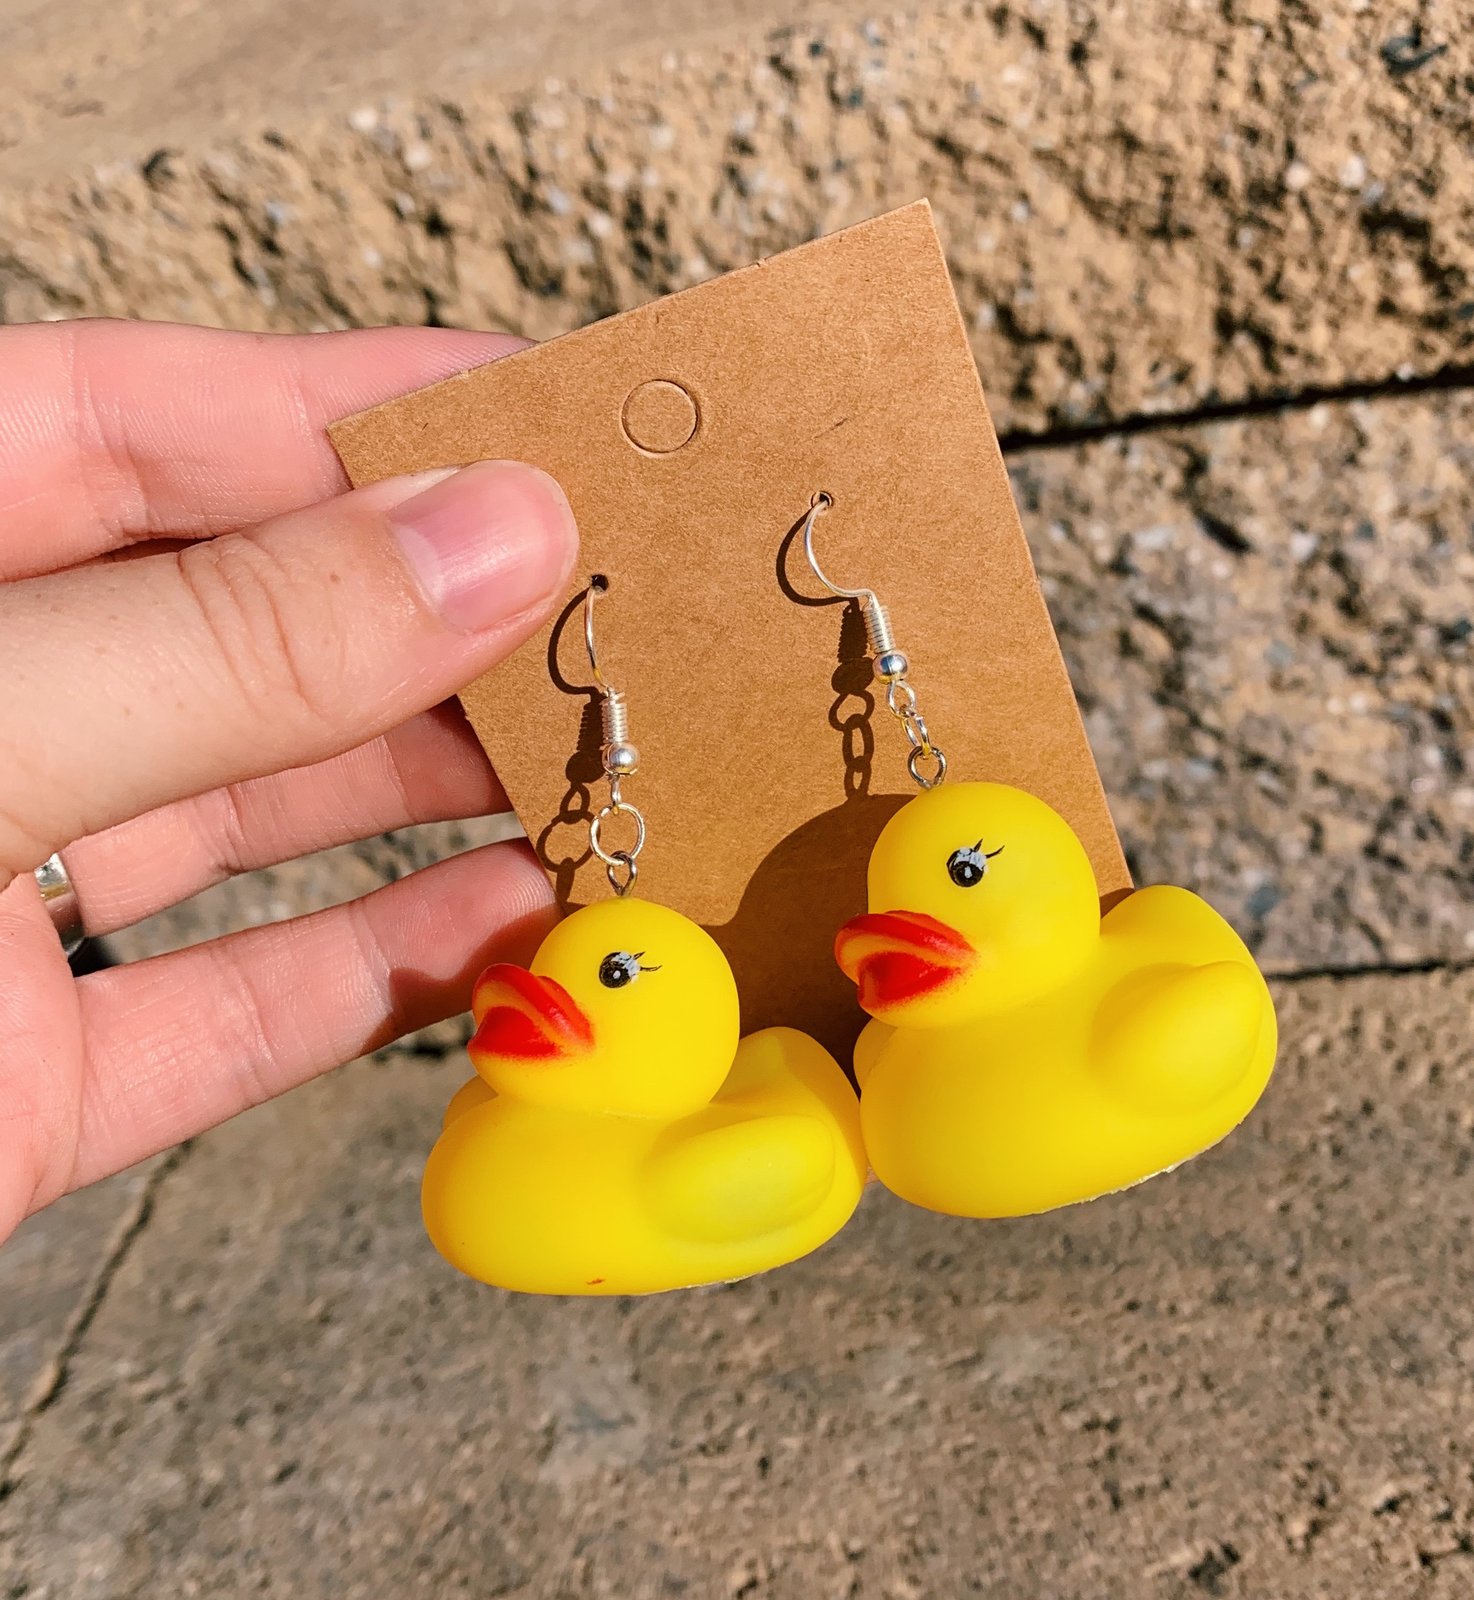 Rubber duck earrings!